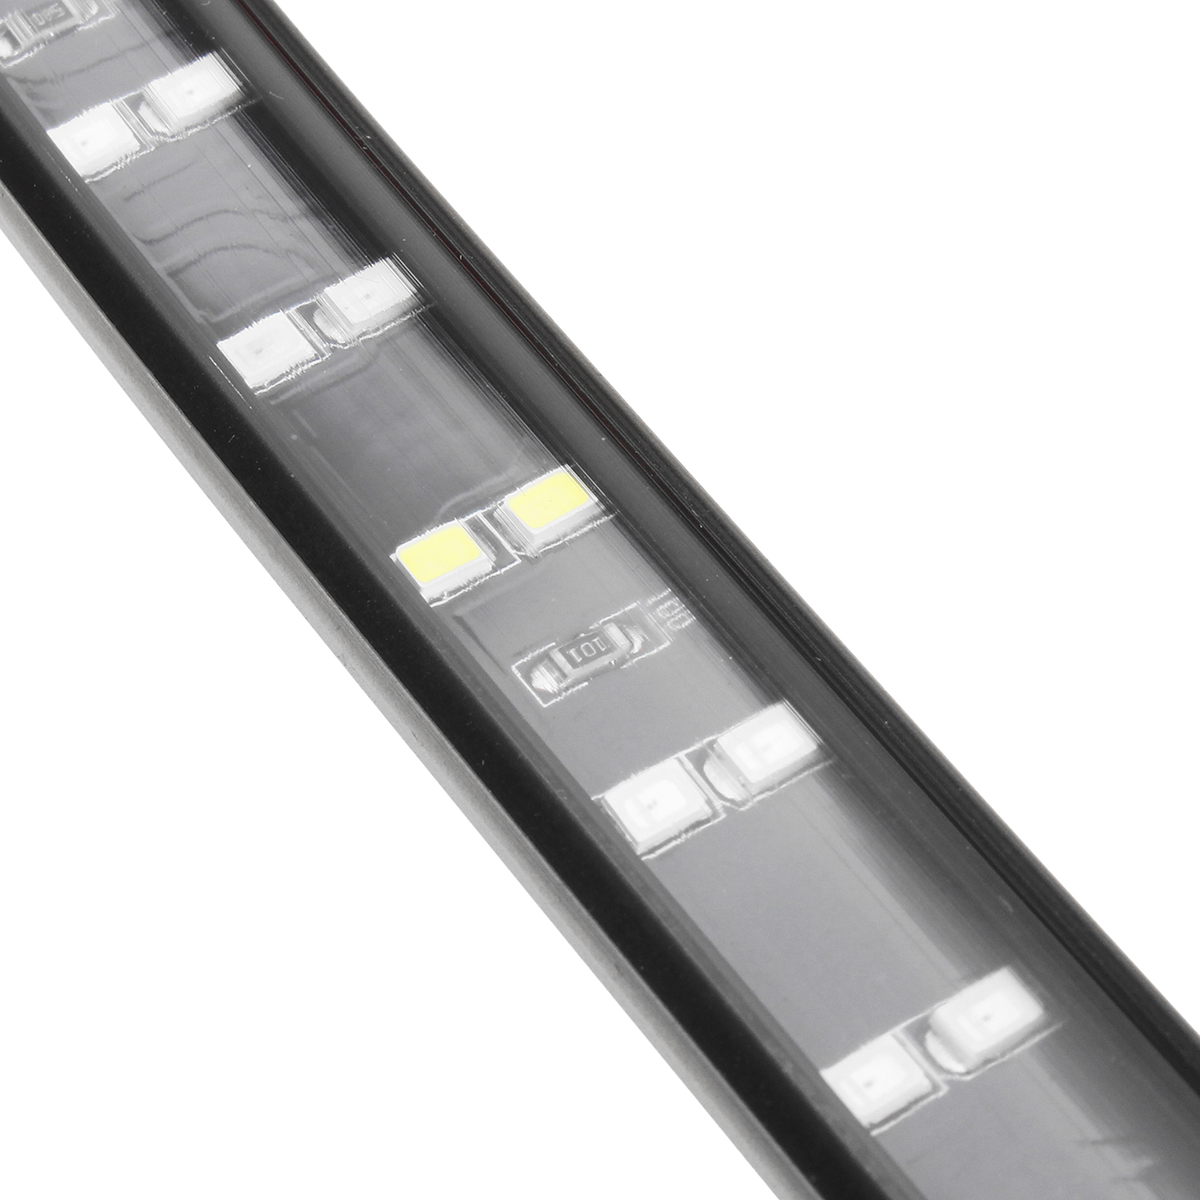 90Cm 120Cm 150Cm Car LED Tailgate DRL Flexible Strip Light Brake Turn Signal Lamp Bar for Truck